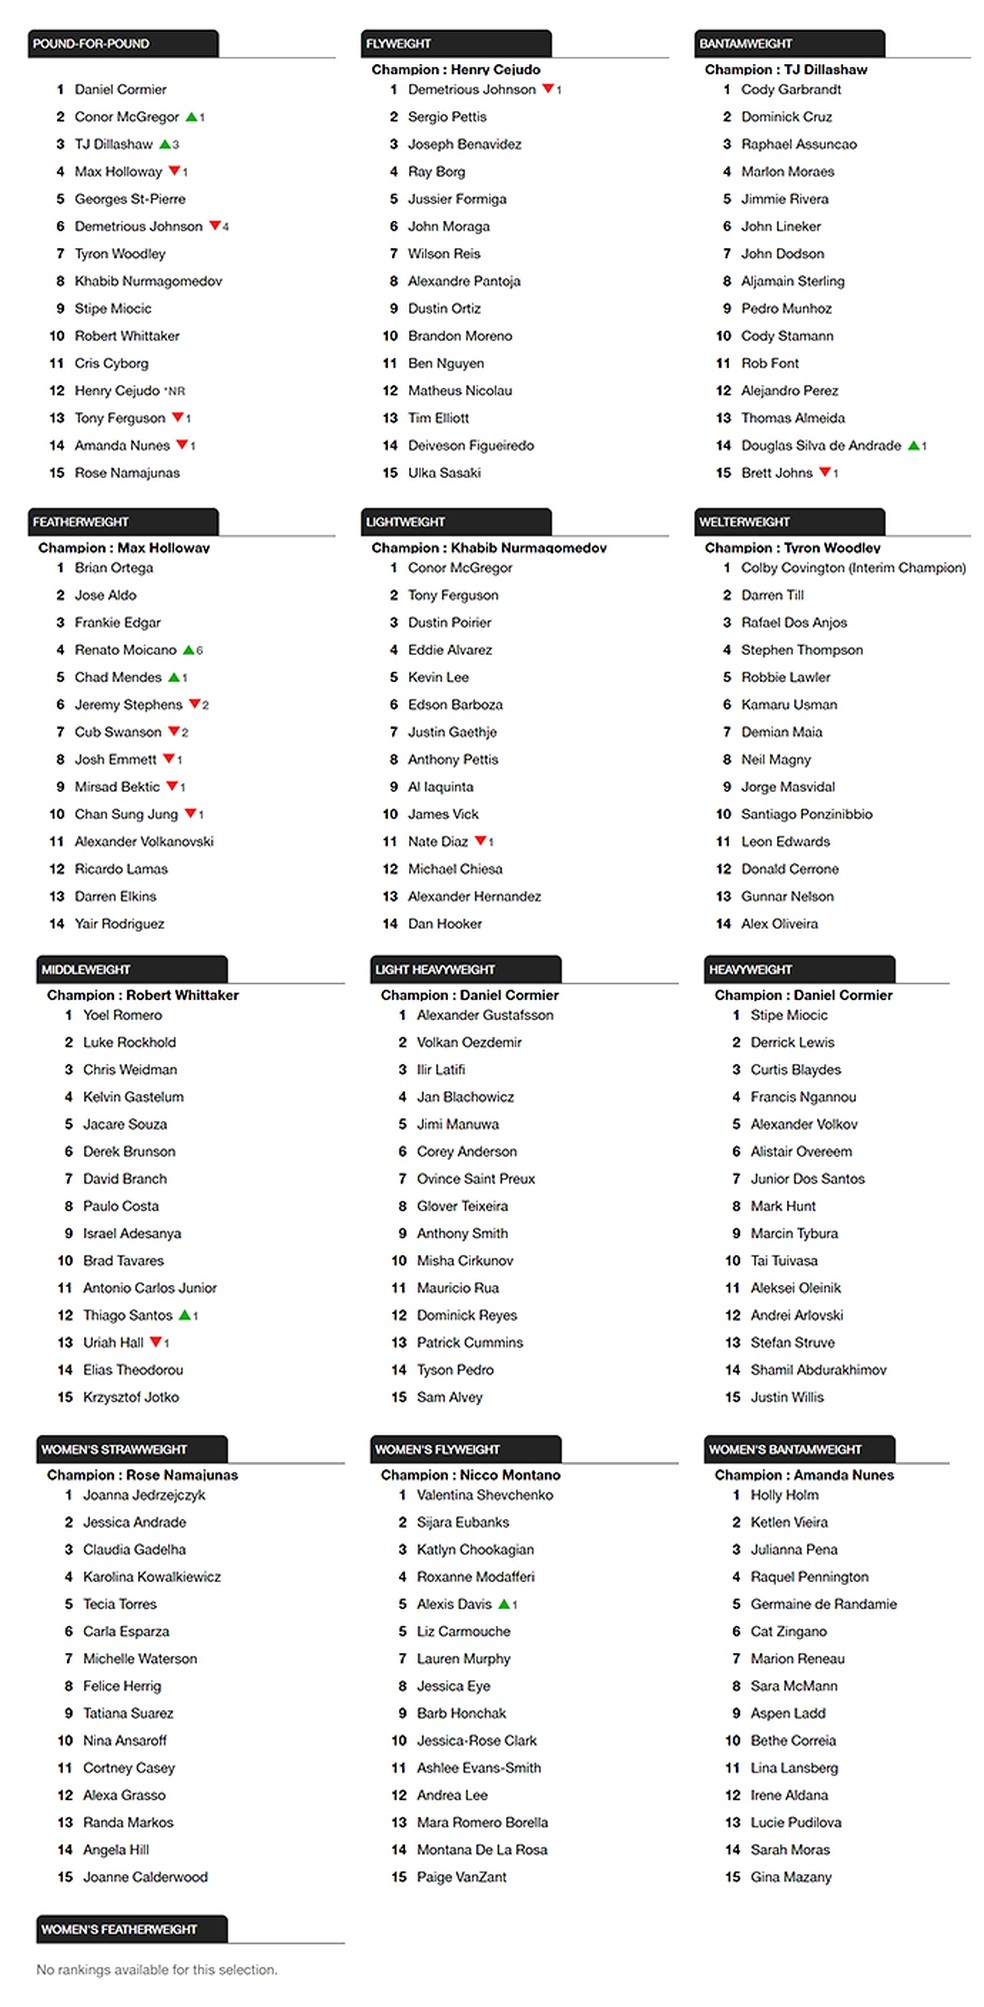 Ranking do UFC após o UFC 227 (Foto: Editoria de Arte)